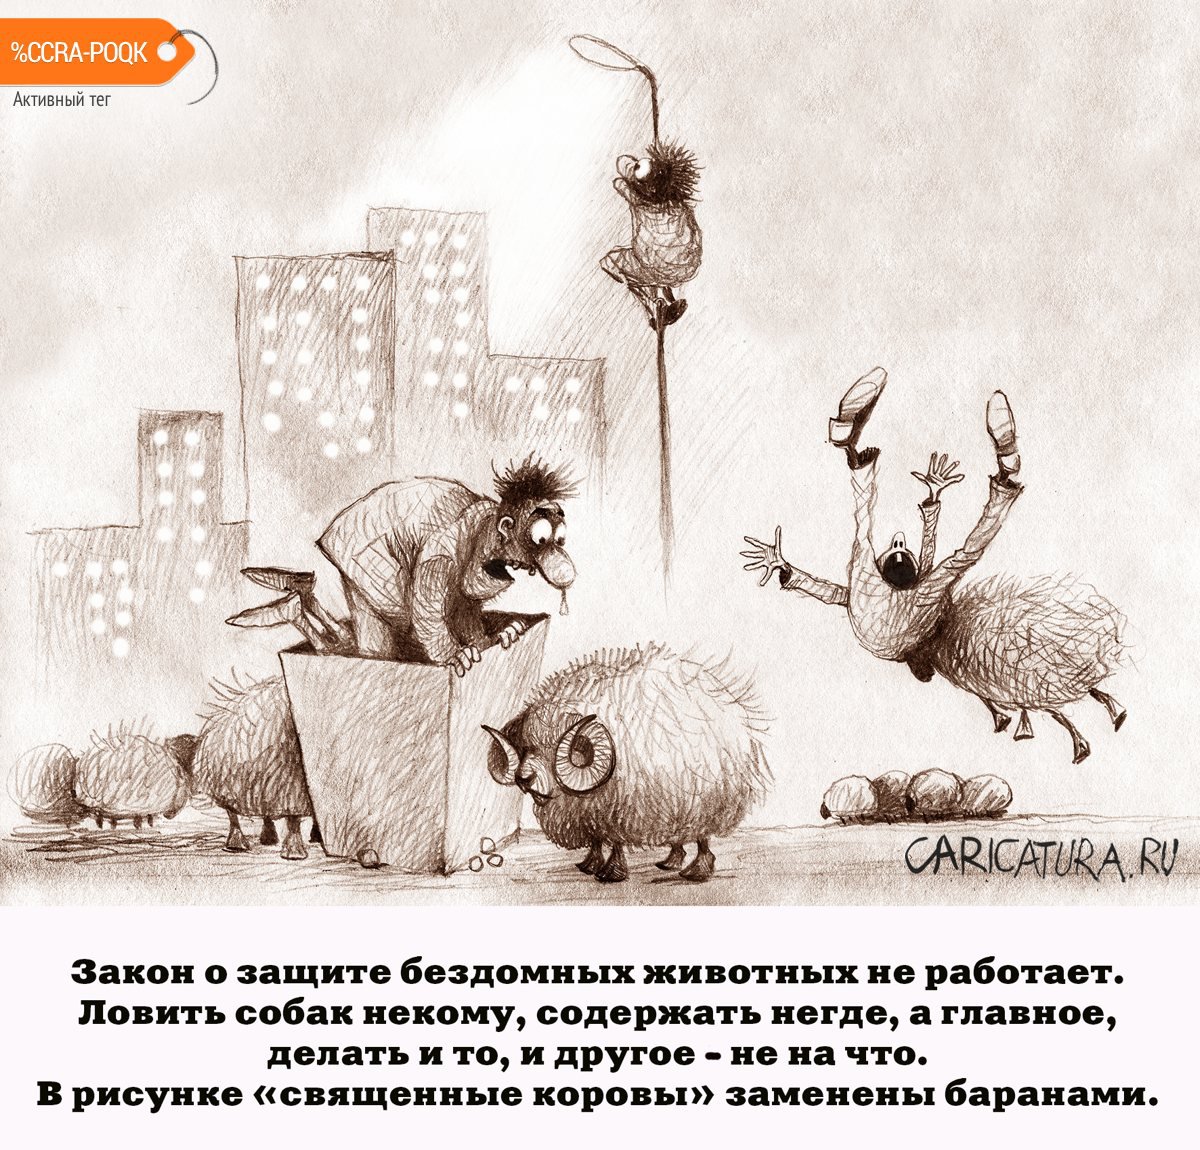 Карикатура "Священные коровы", Александр Попов